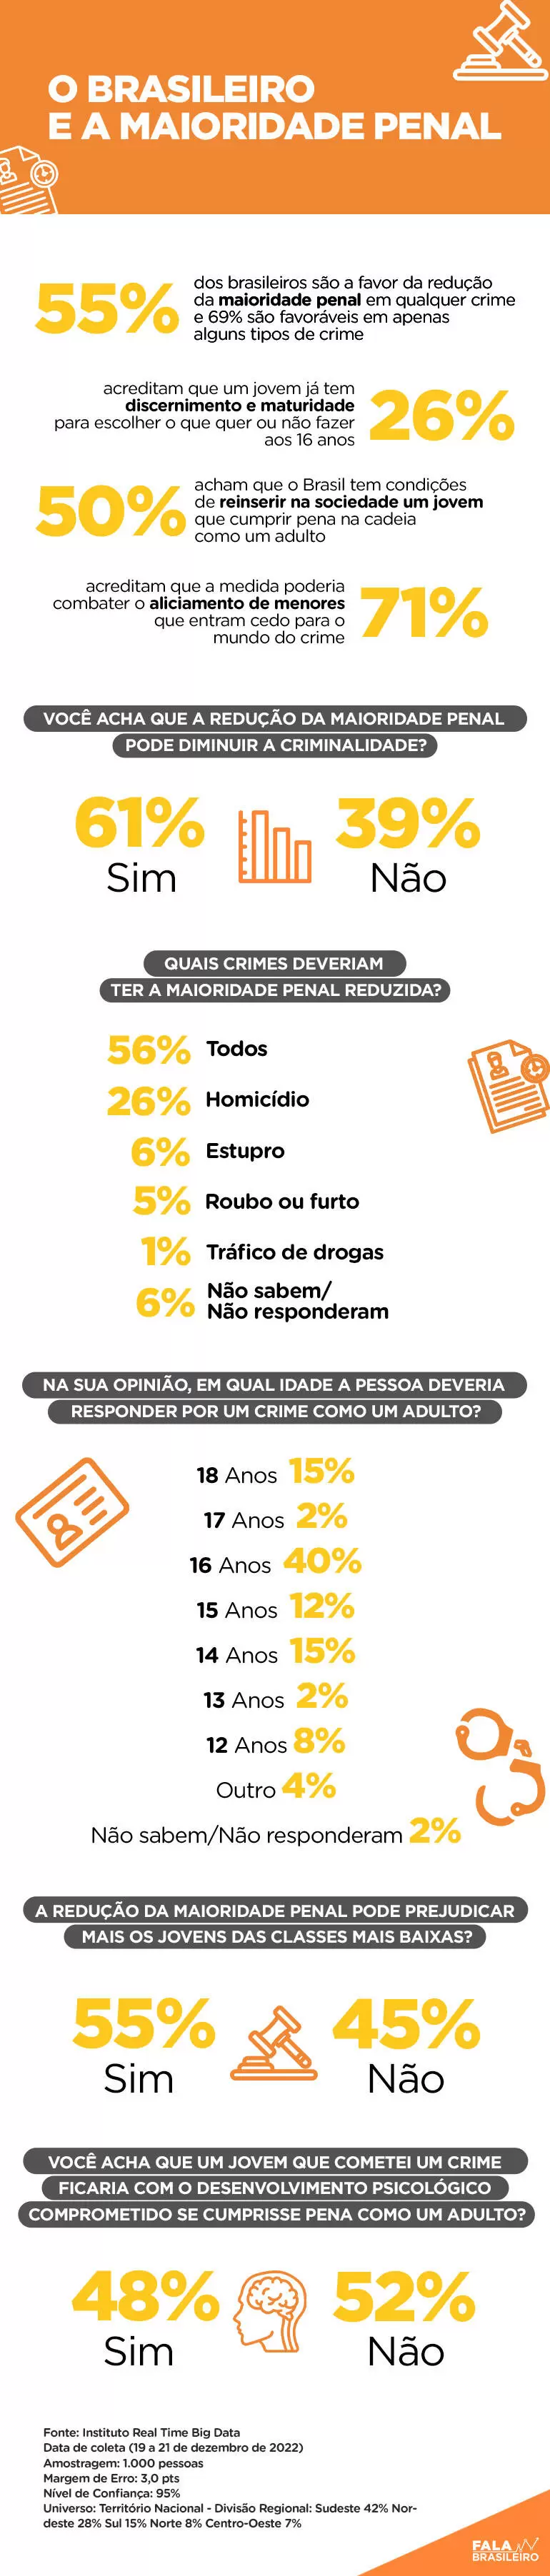 Estudo mostra o que o brasileiro pensa sobre a maioridade penal
